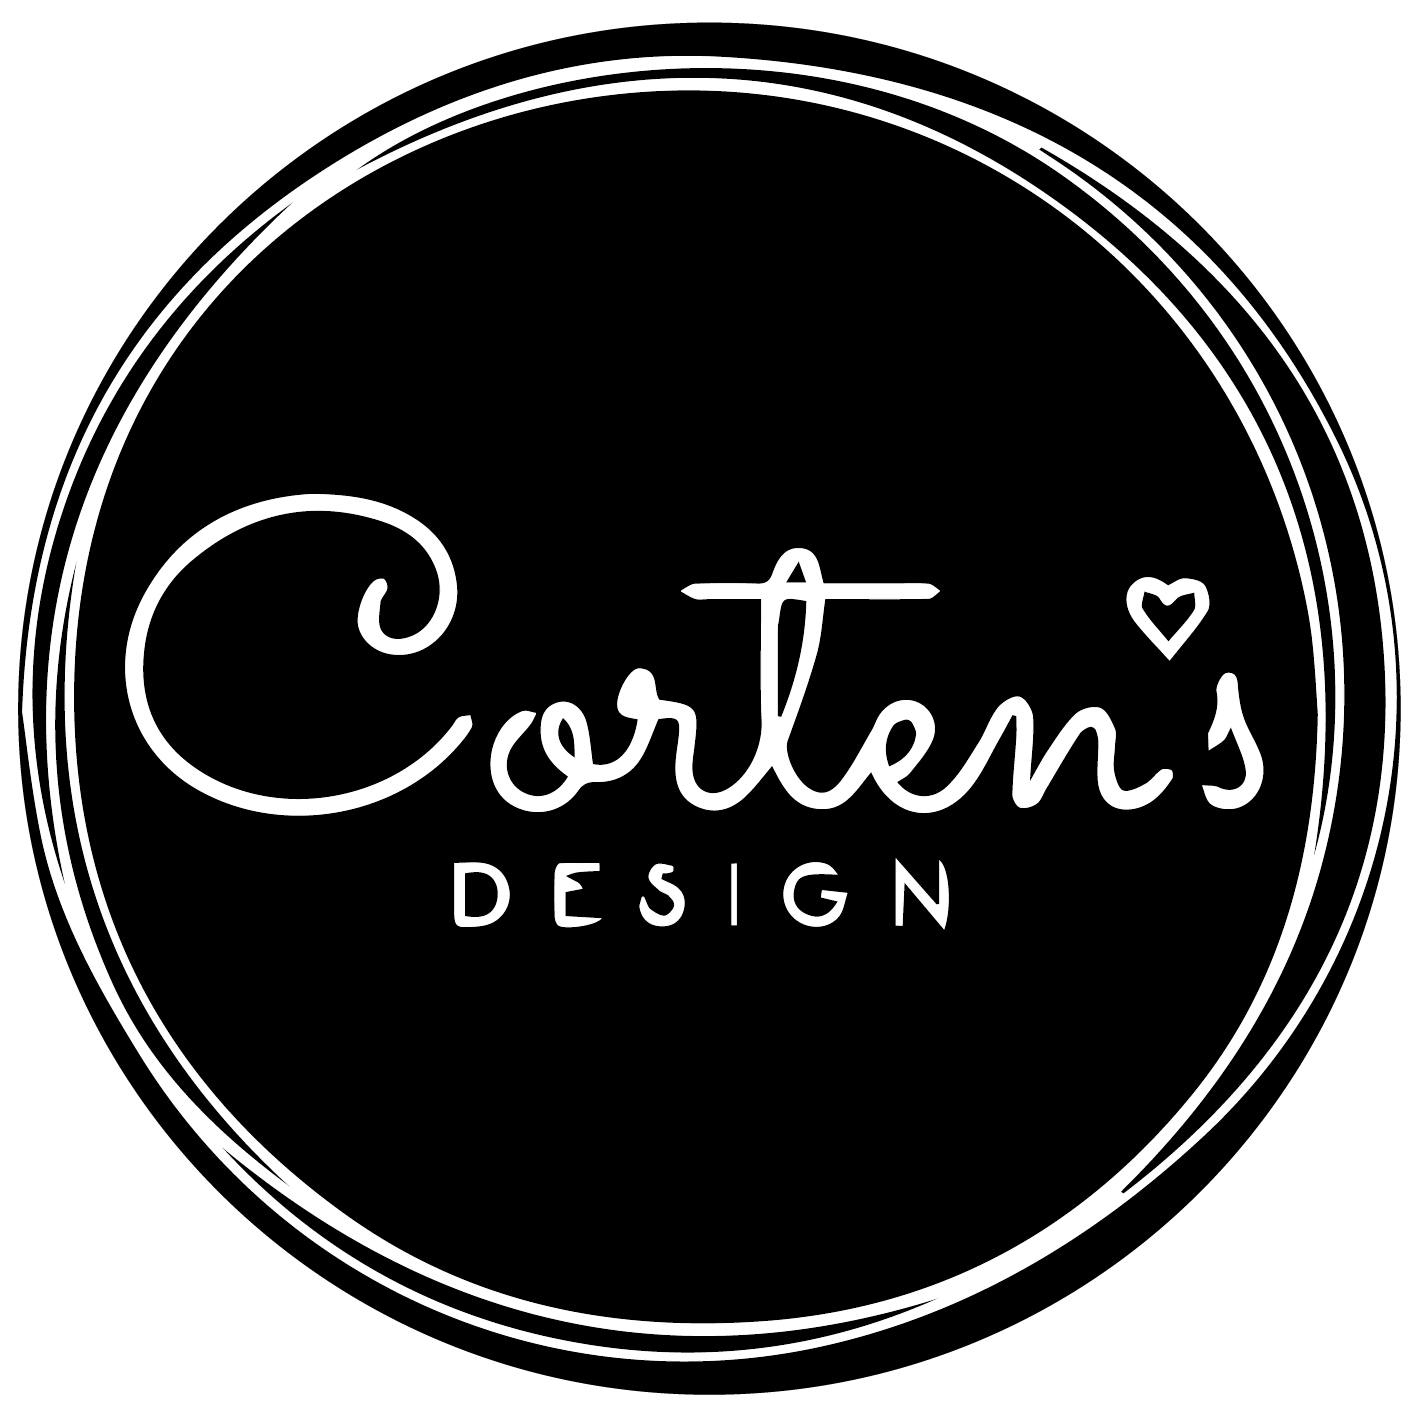 cortensdesign.com